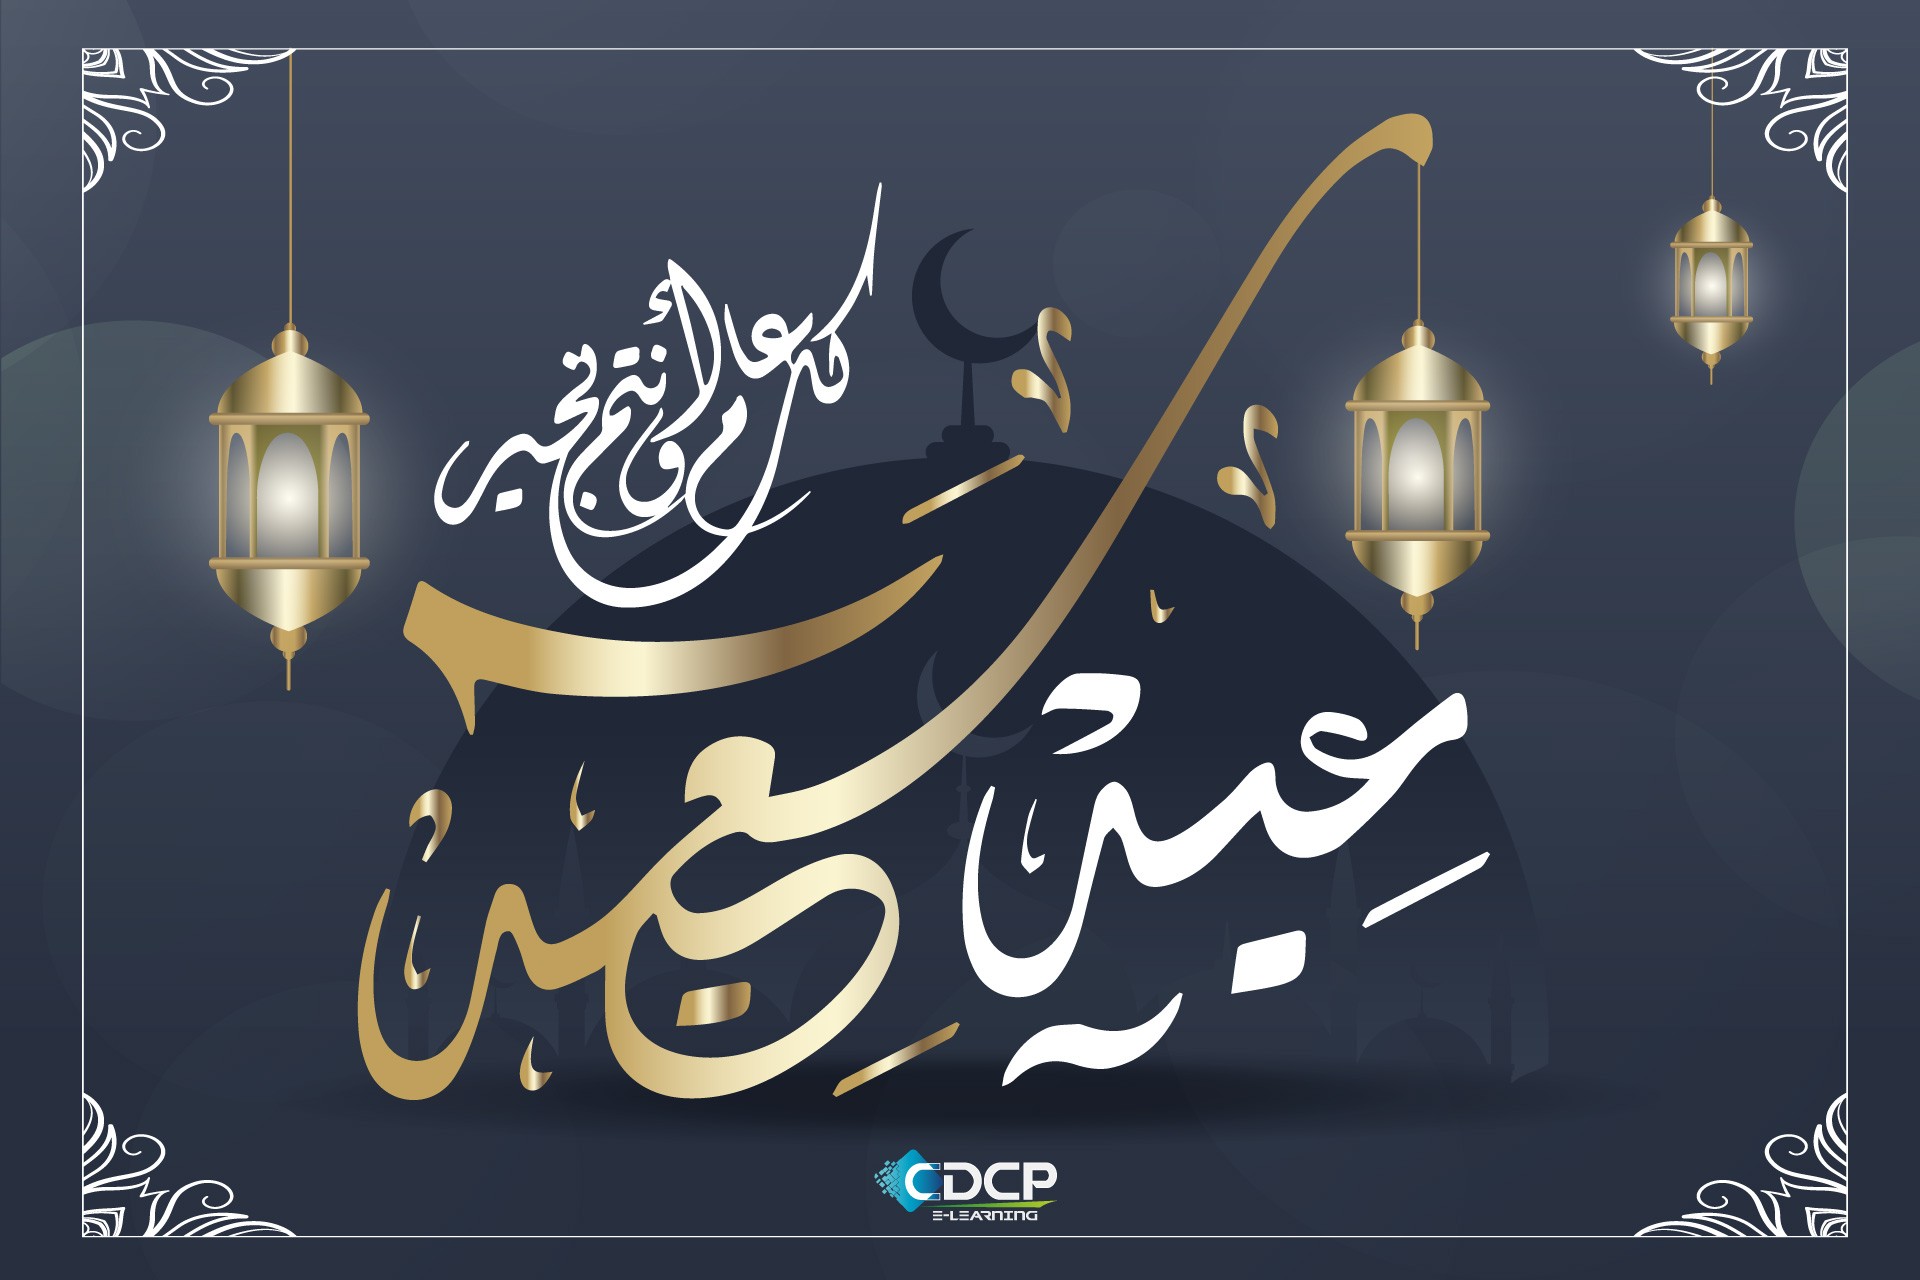 Eid el fitr by cdcp